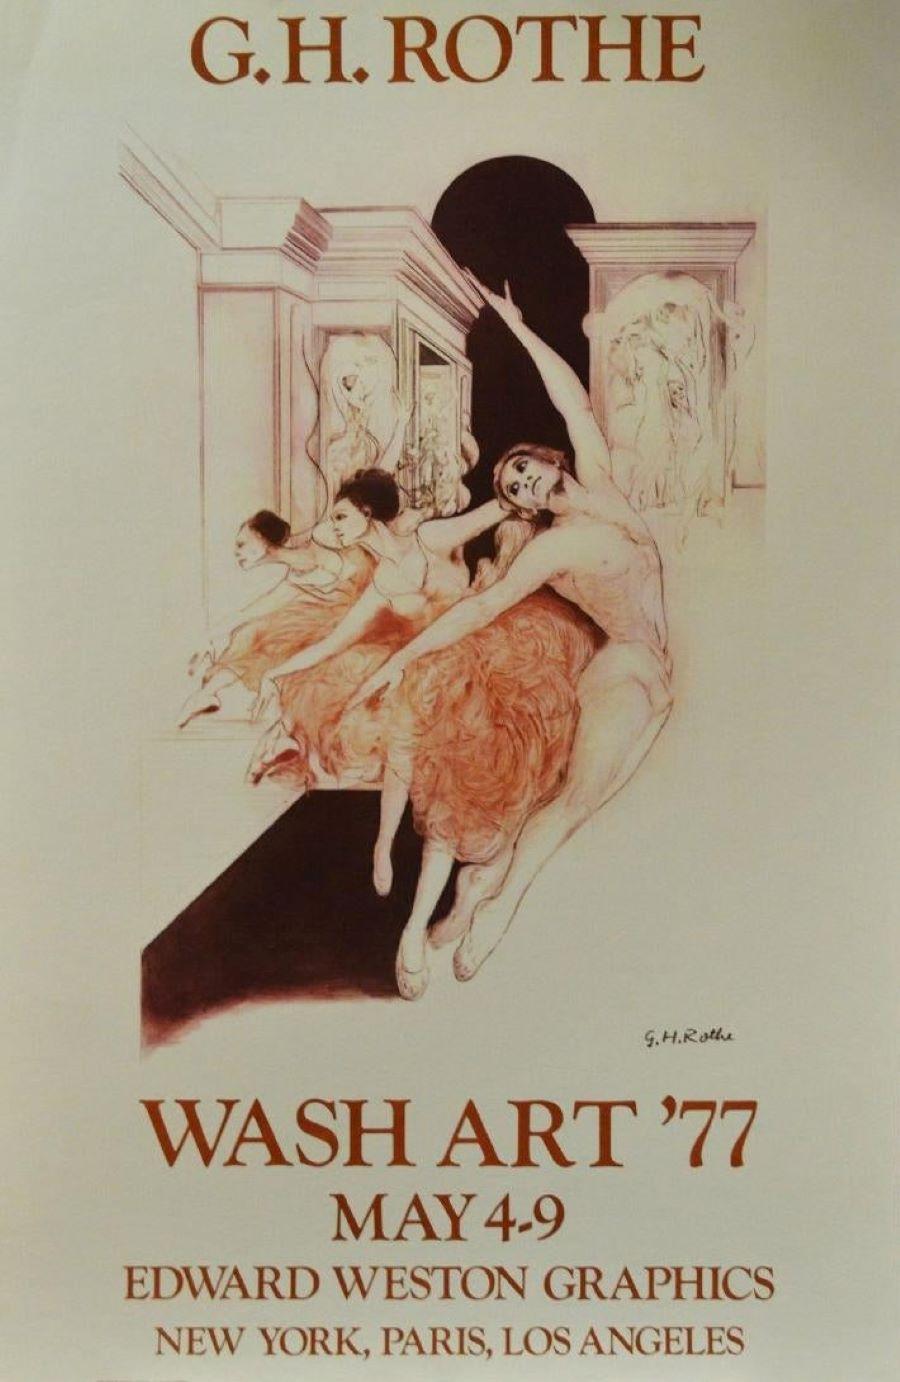 Wash Art '77, May 4-9, Edward Weston Graphics- New York, Paris, Los Angeles